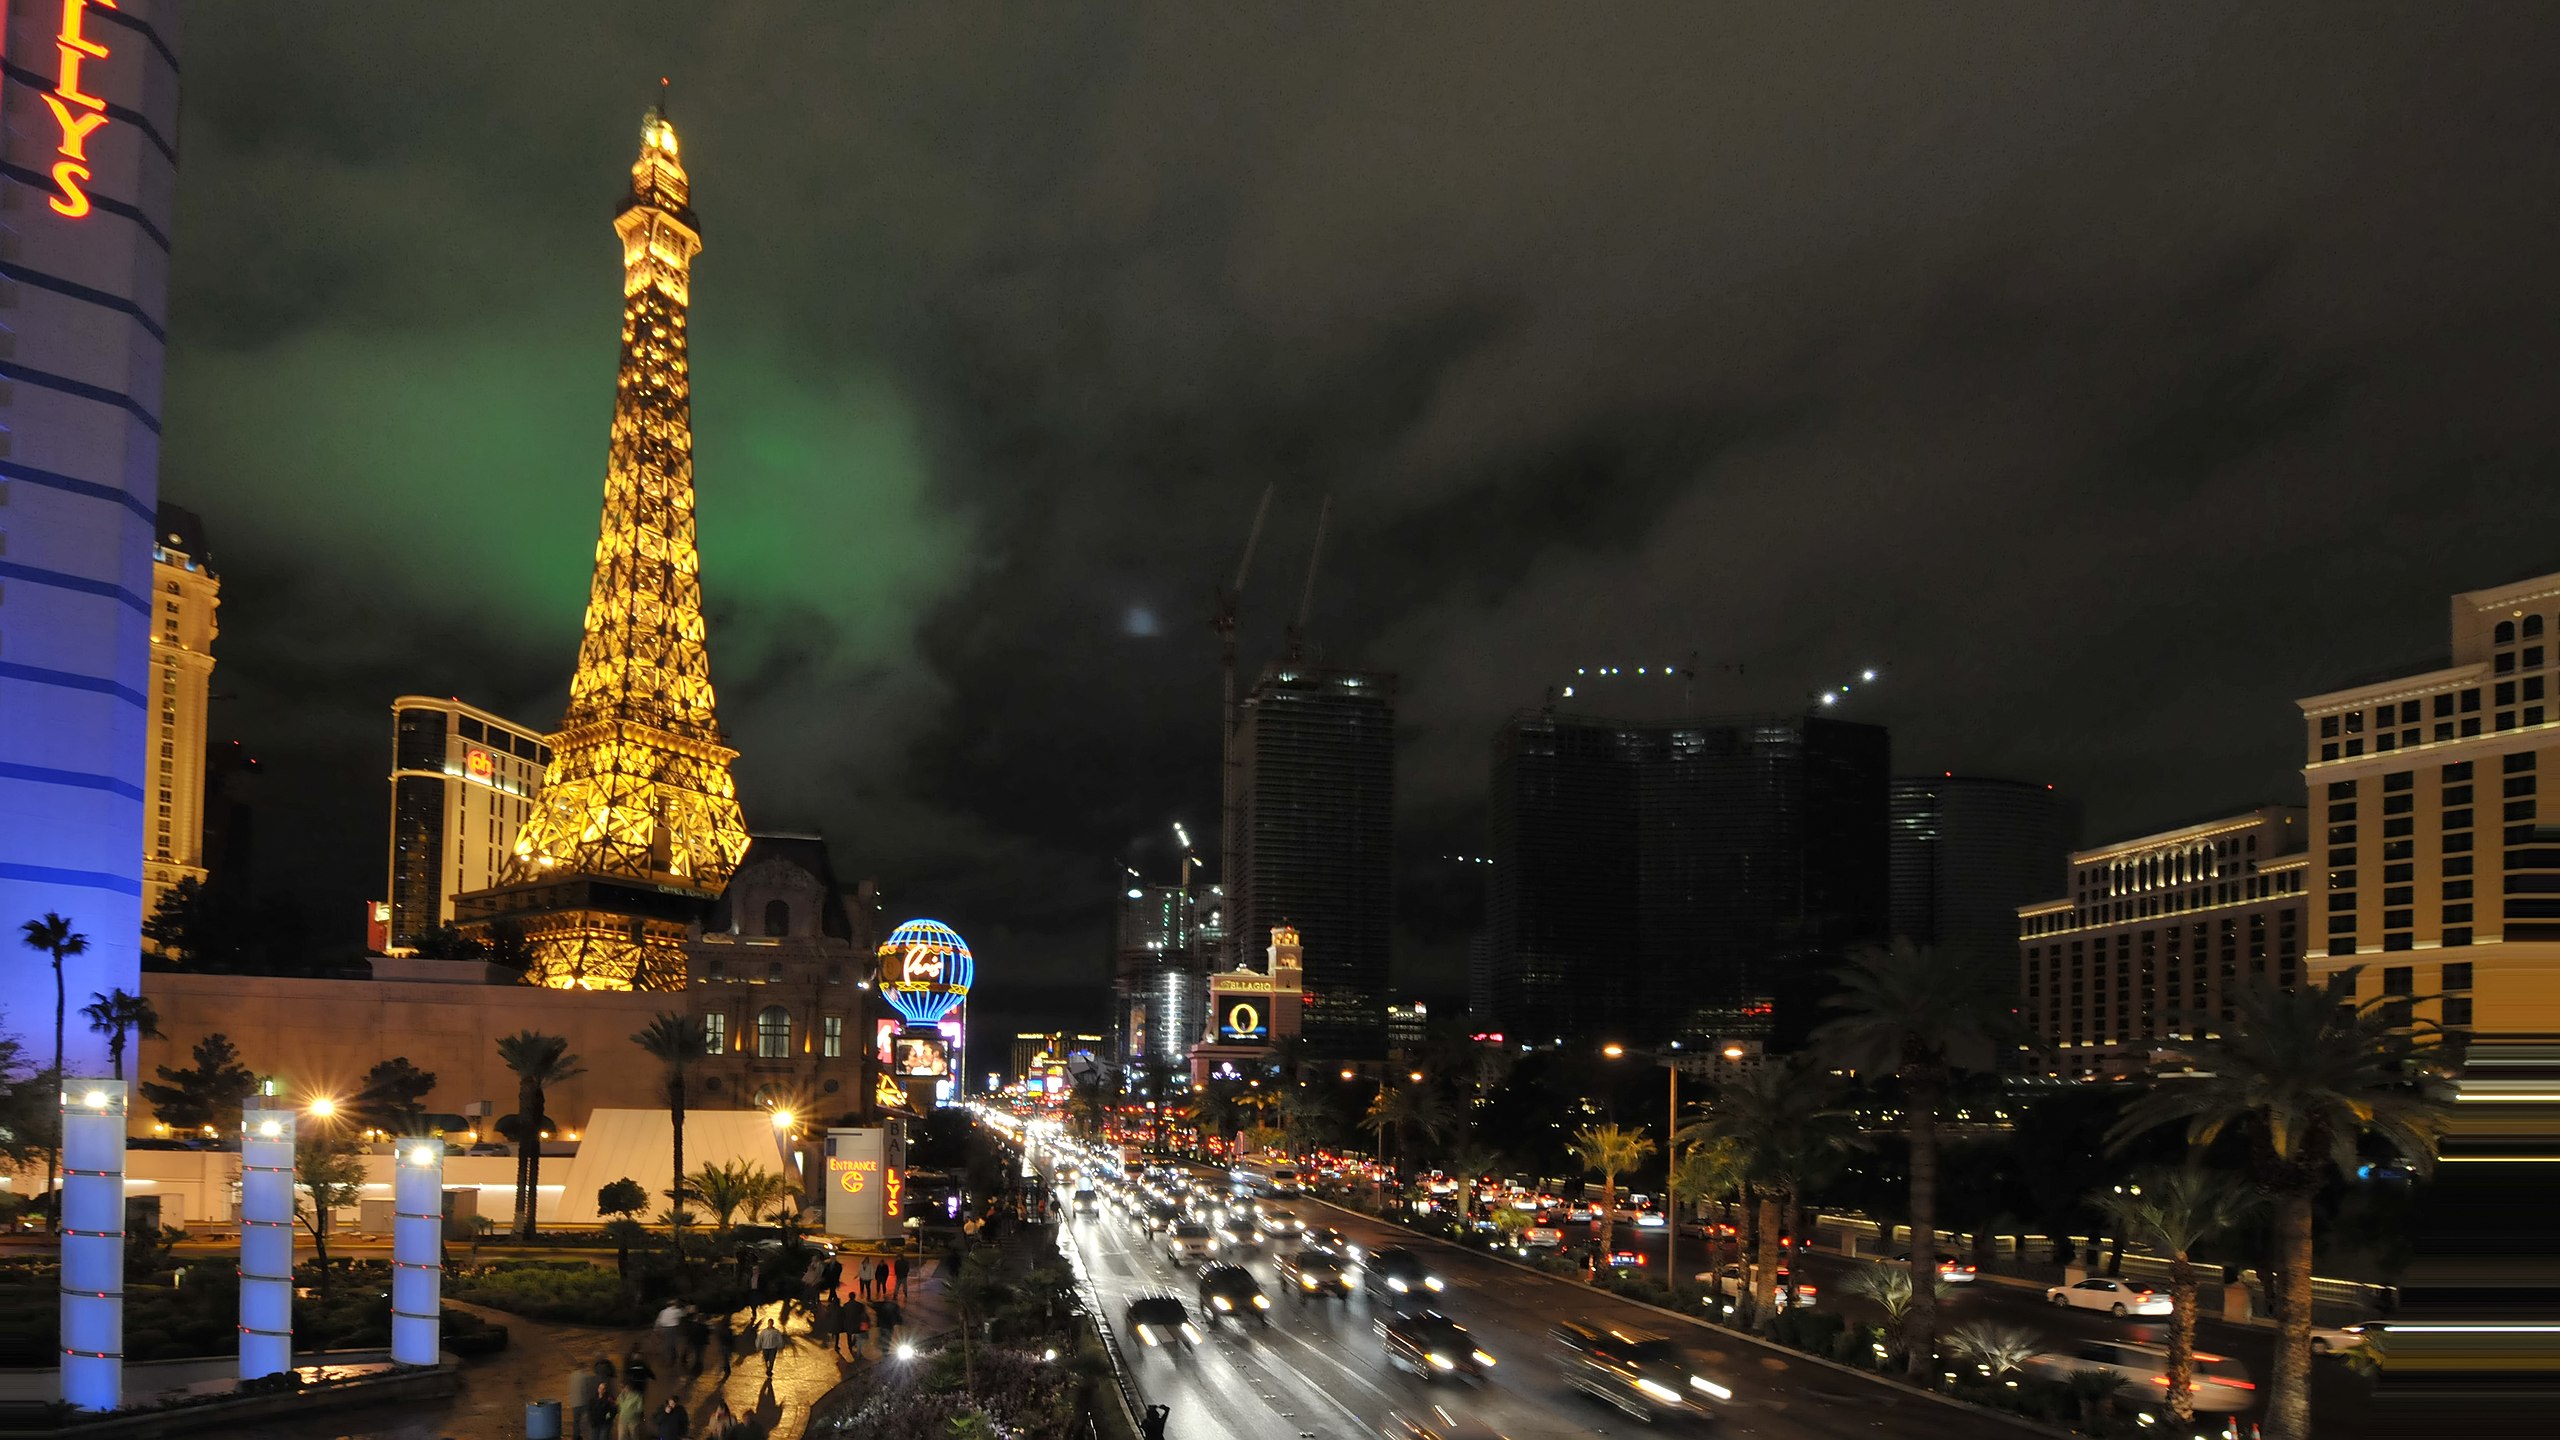 File:Paris Las Vegas (hotel and casino on the Las Vegas Strip).jpg -  Wikimedia Commons